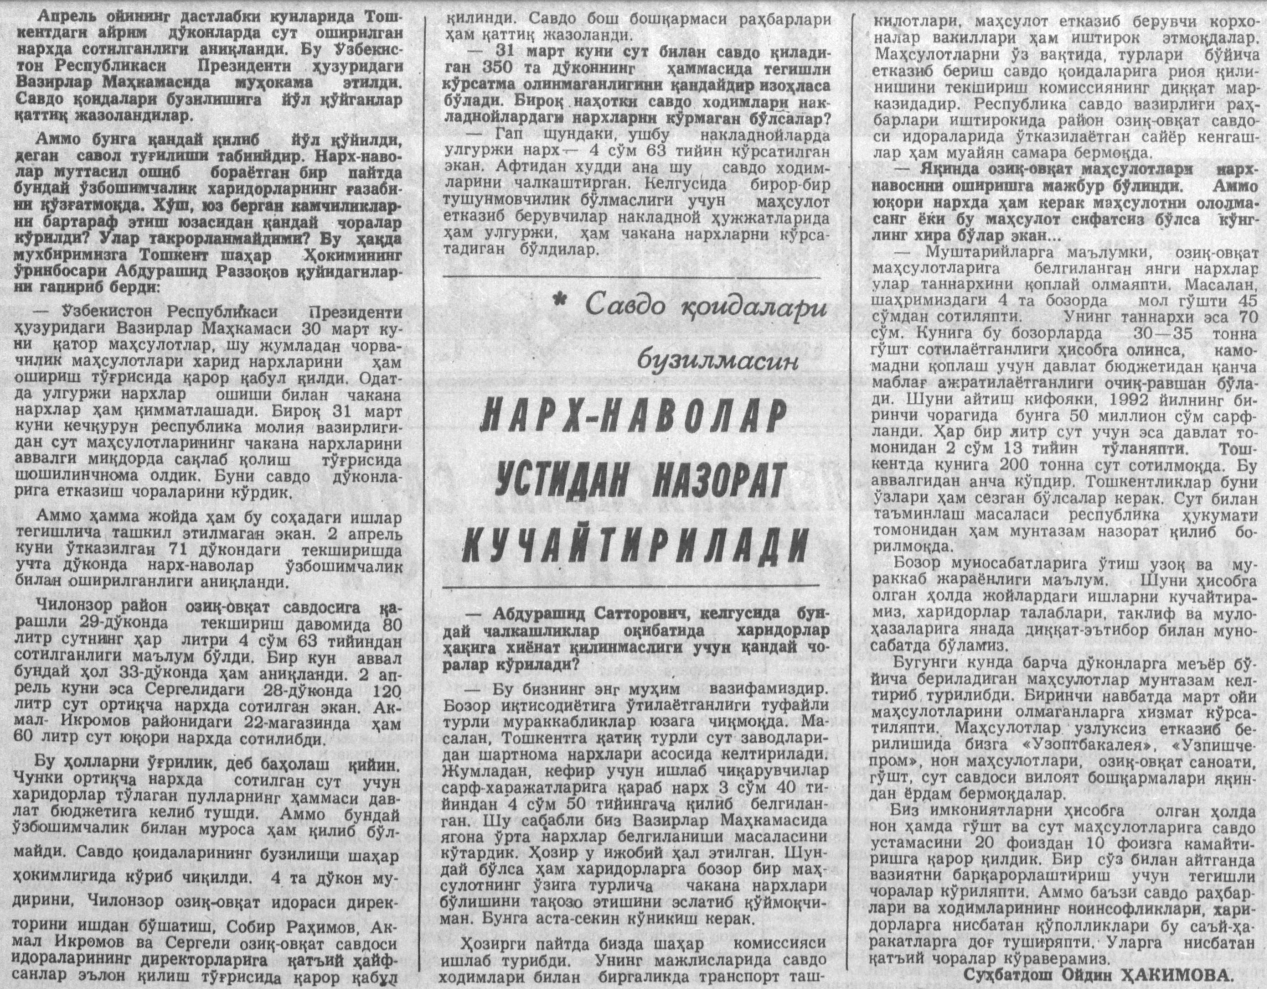 “Toshkent oqshomi” gazetasining 1992-yil 13-aprel sonidan lavha